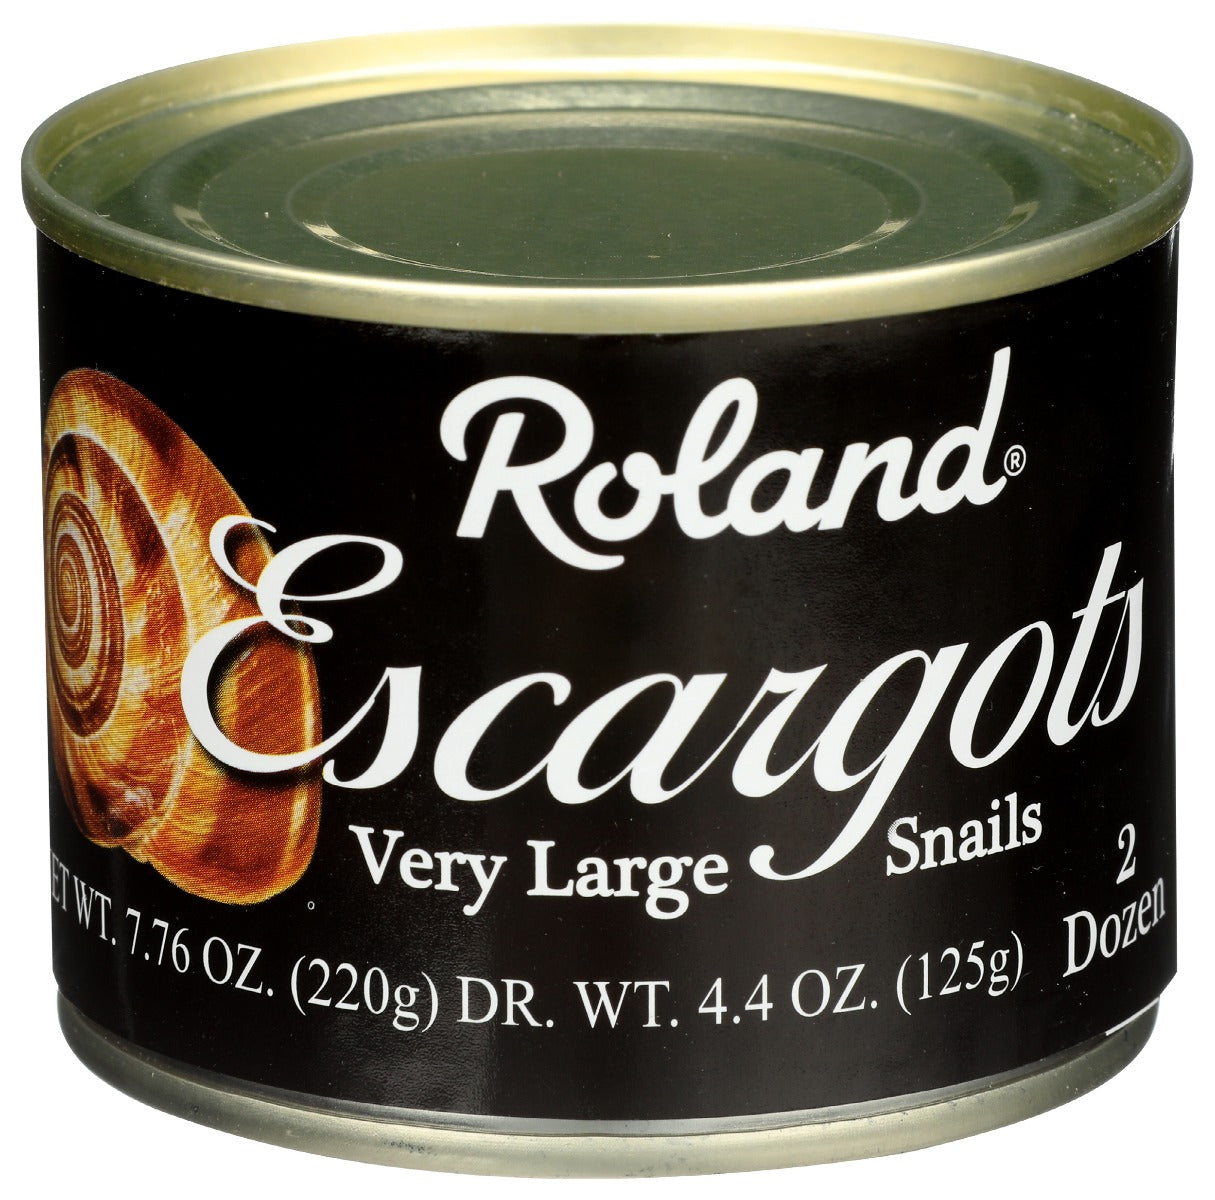 ROLAND: Escargots Very Large Snails, 7.75 oz